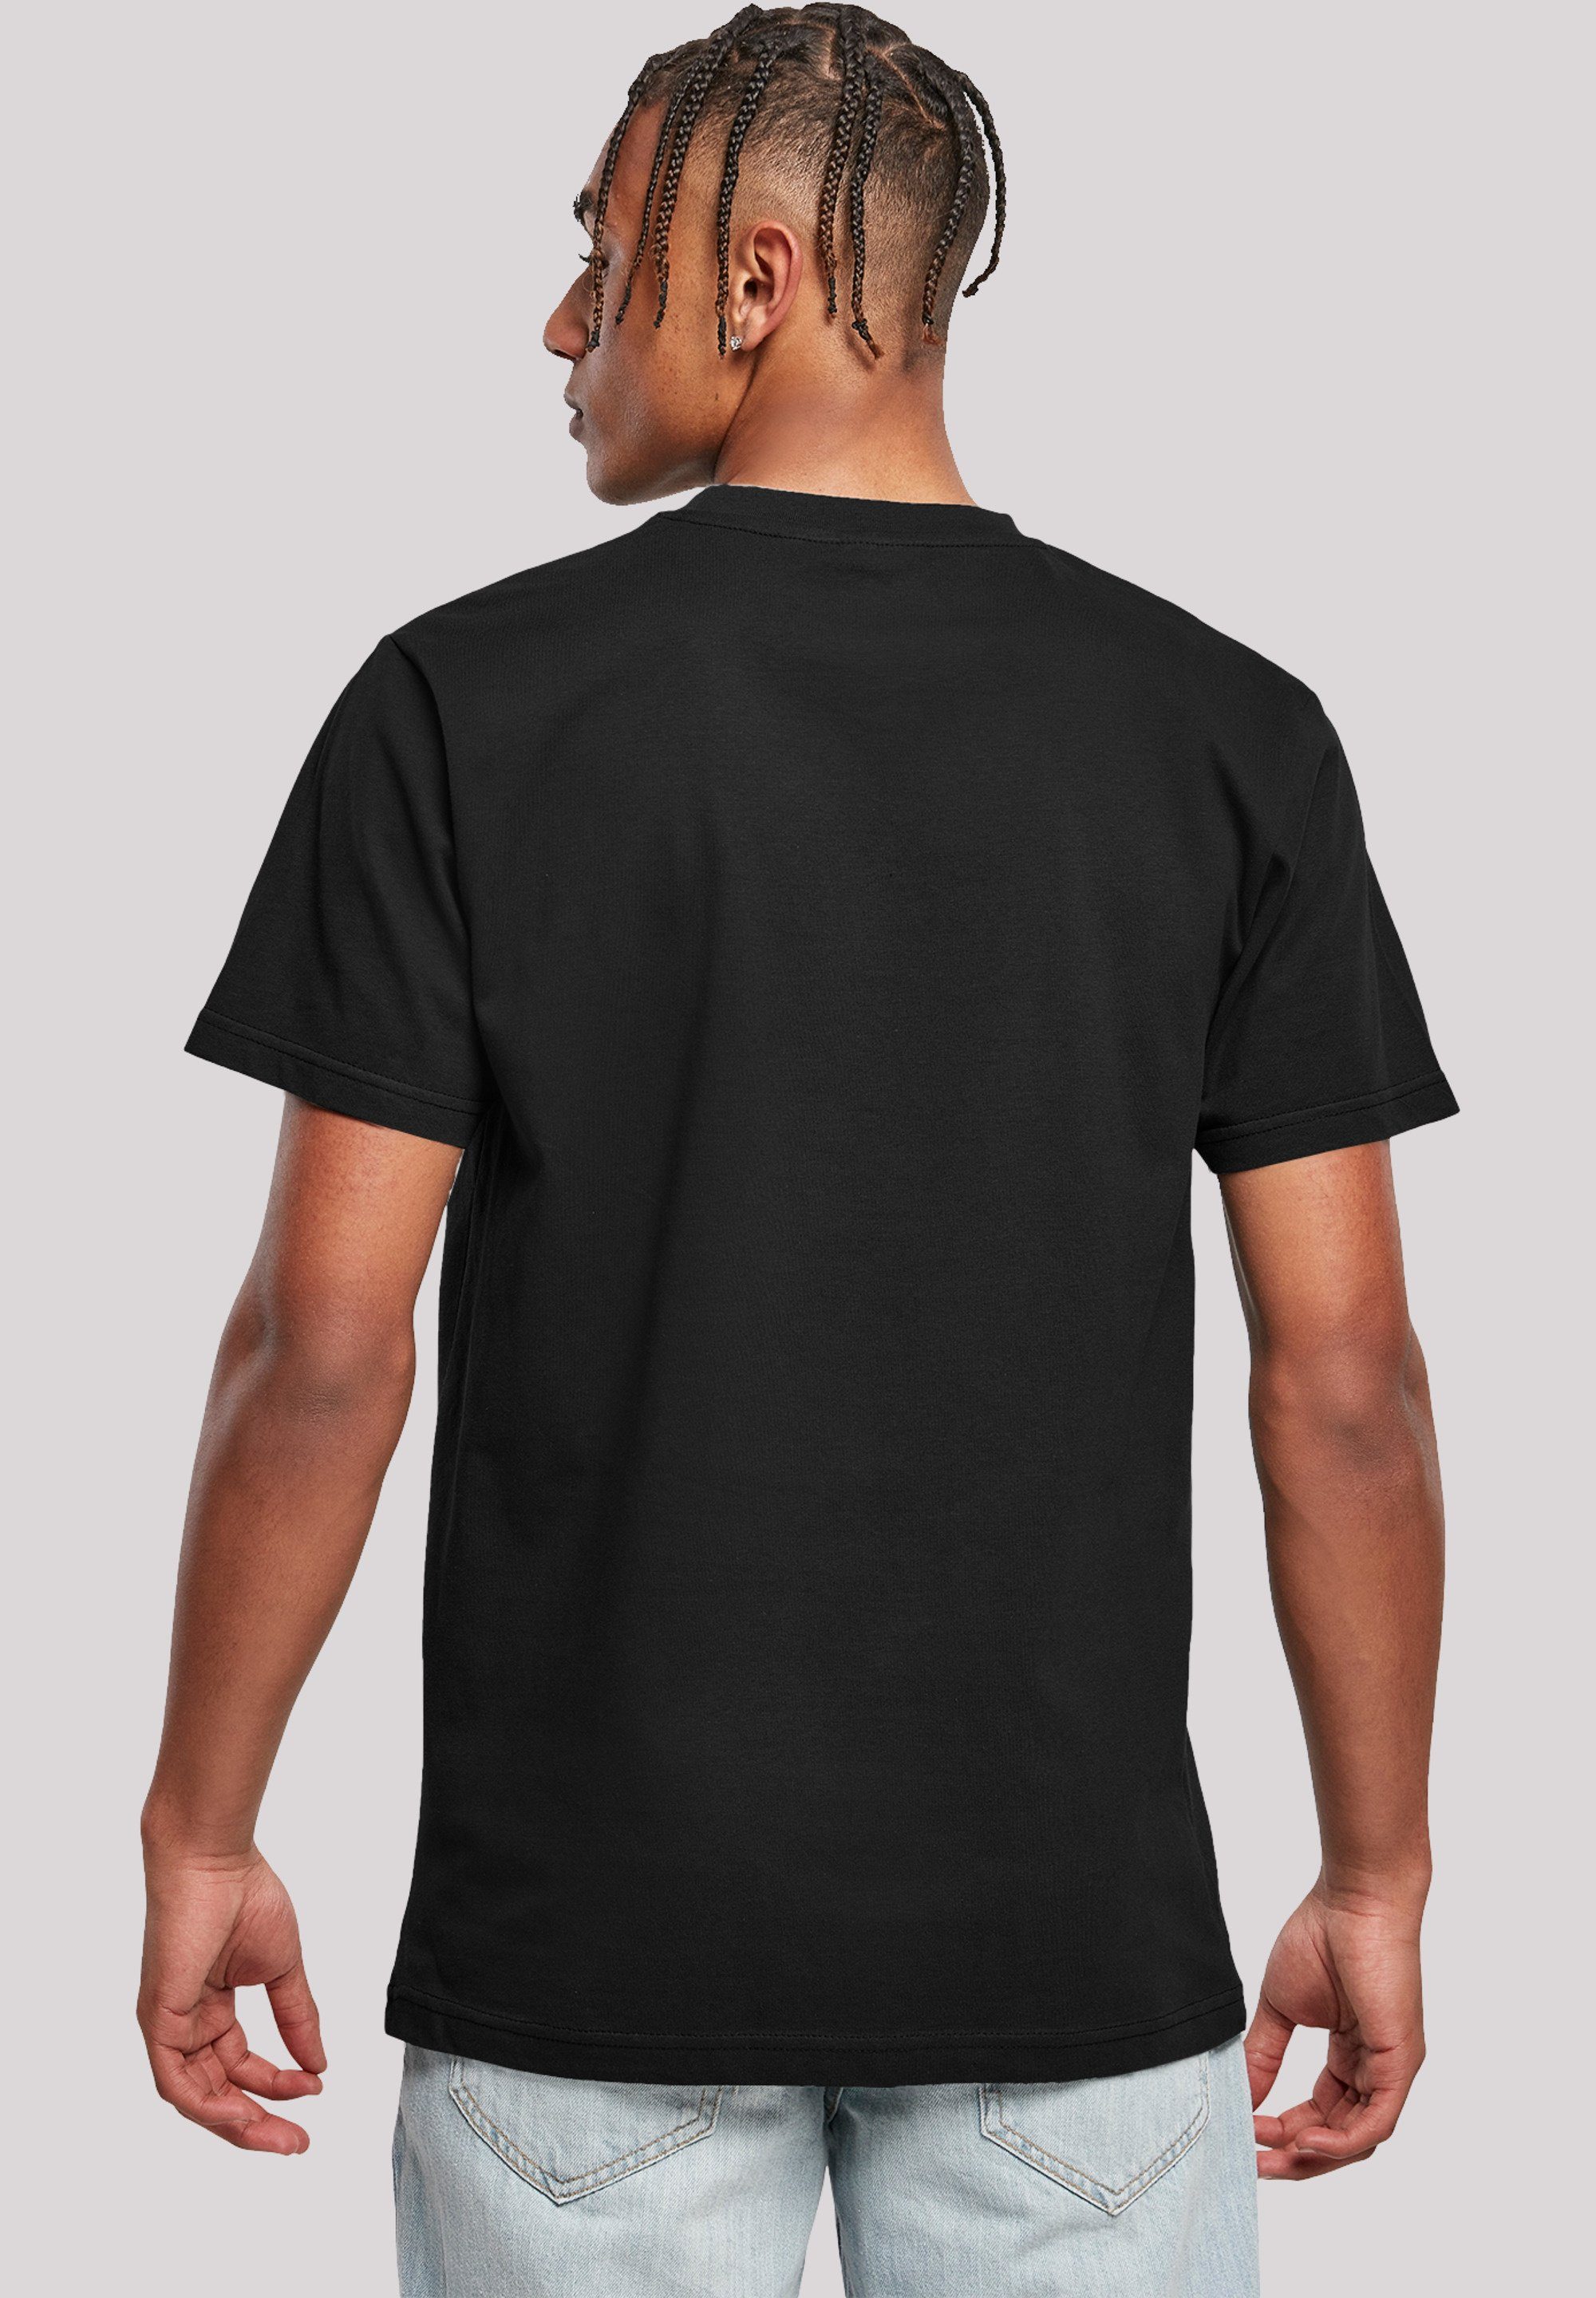 F4NT4STIC T-Shirt Slay Jugendwort 2022, slang schwarz